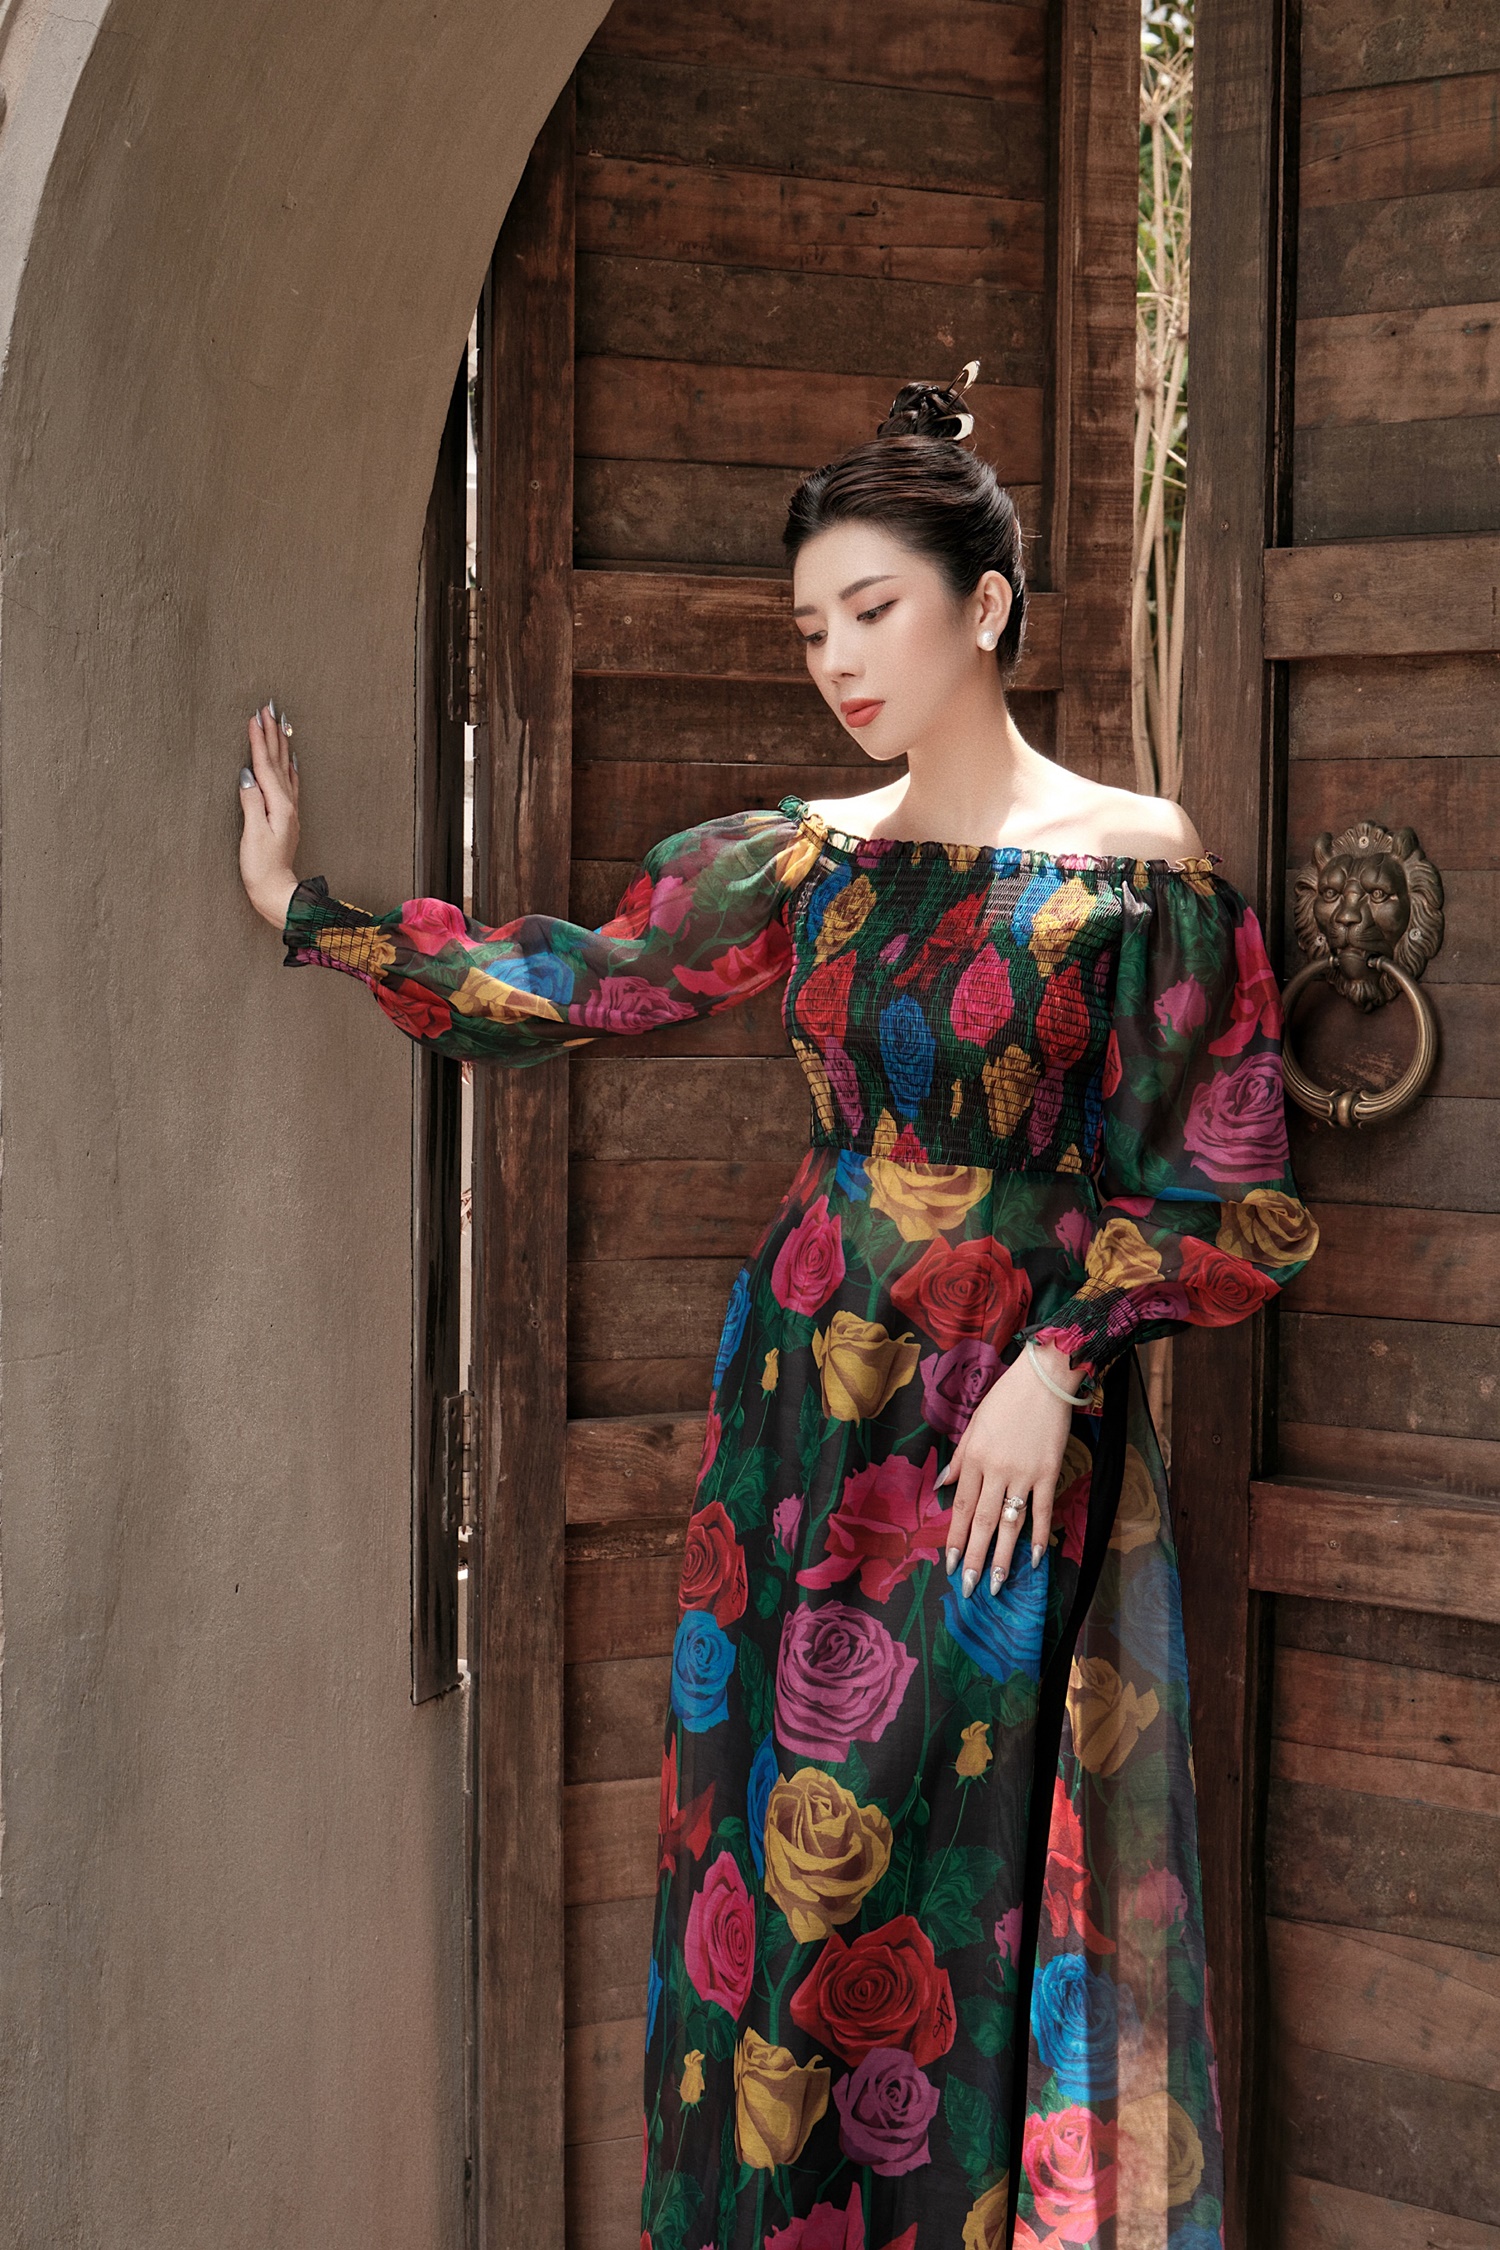 Trước khi thành lập học viện lần này, Dương Yến Nhung đã kinh doanh các mặt hàng mỹ phẩm dành cho phái đẹp. Do đó, cô có nhiều kinh nghiệm và quyết tâm để đưa nơi này trở thành địa điểm có tiếng trong lĩnh vực chăm sóc sắc đẹp cho chị em phụ nữ.  